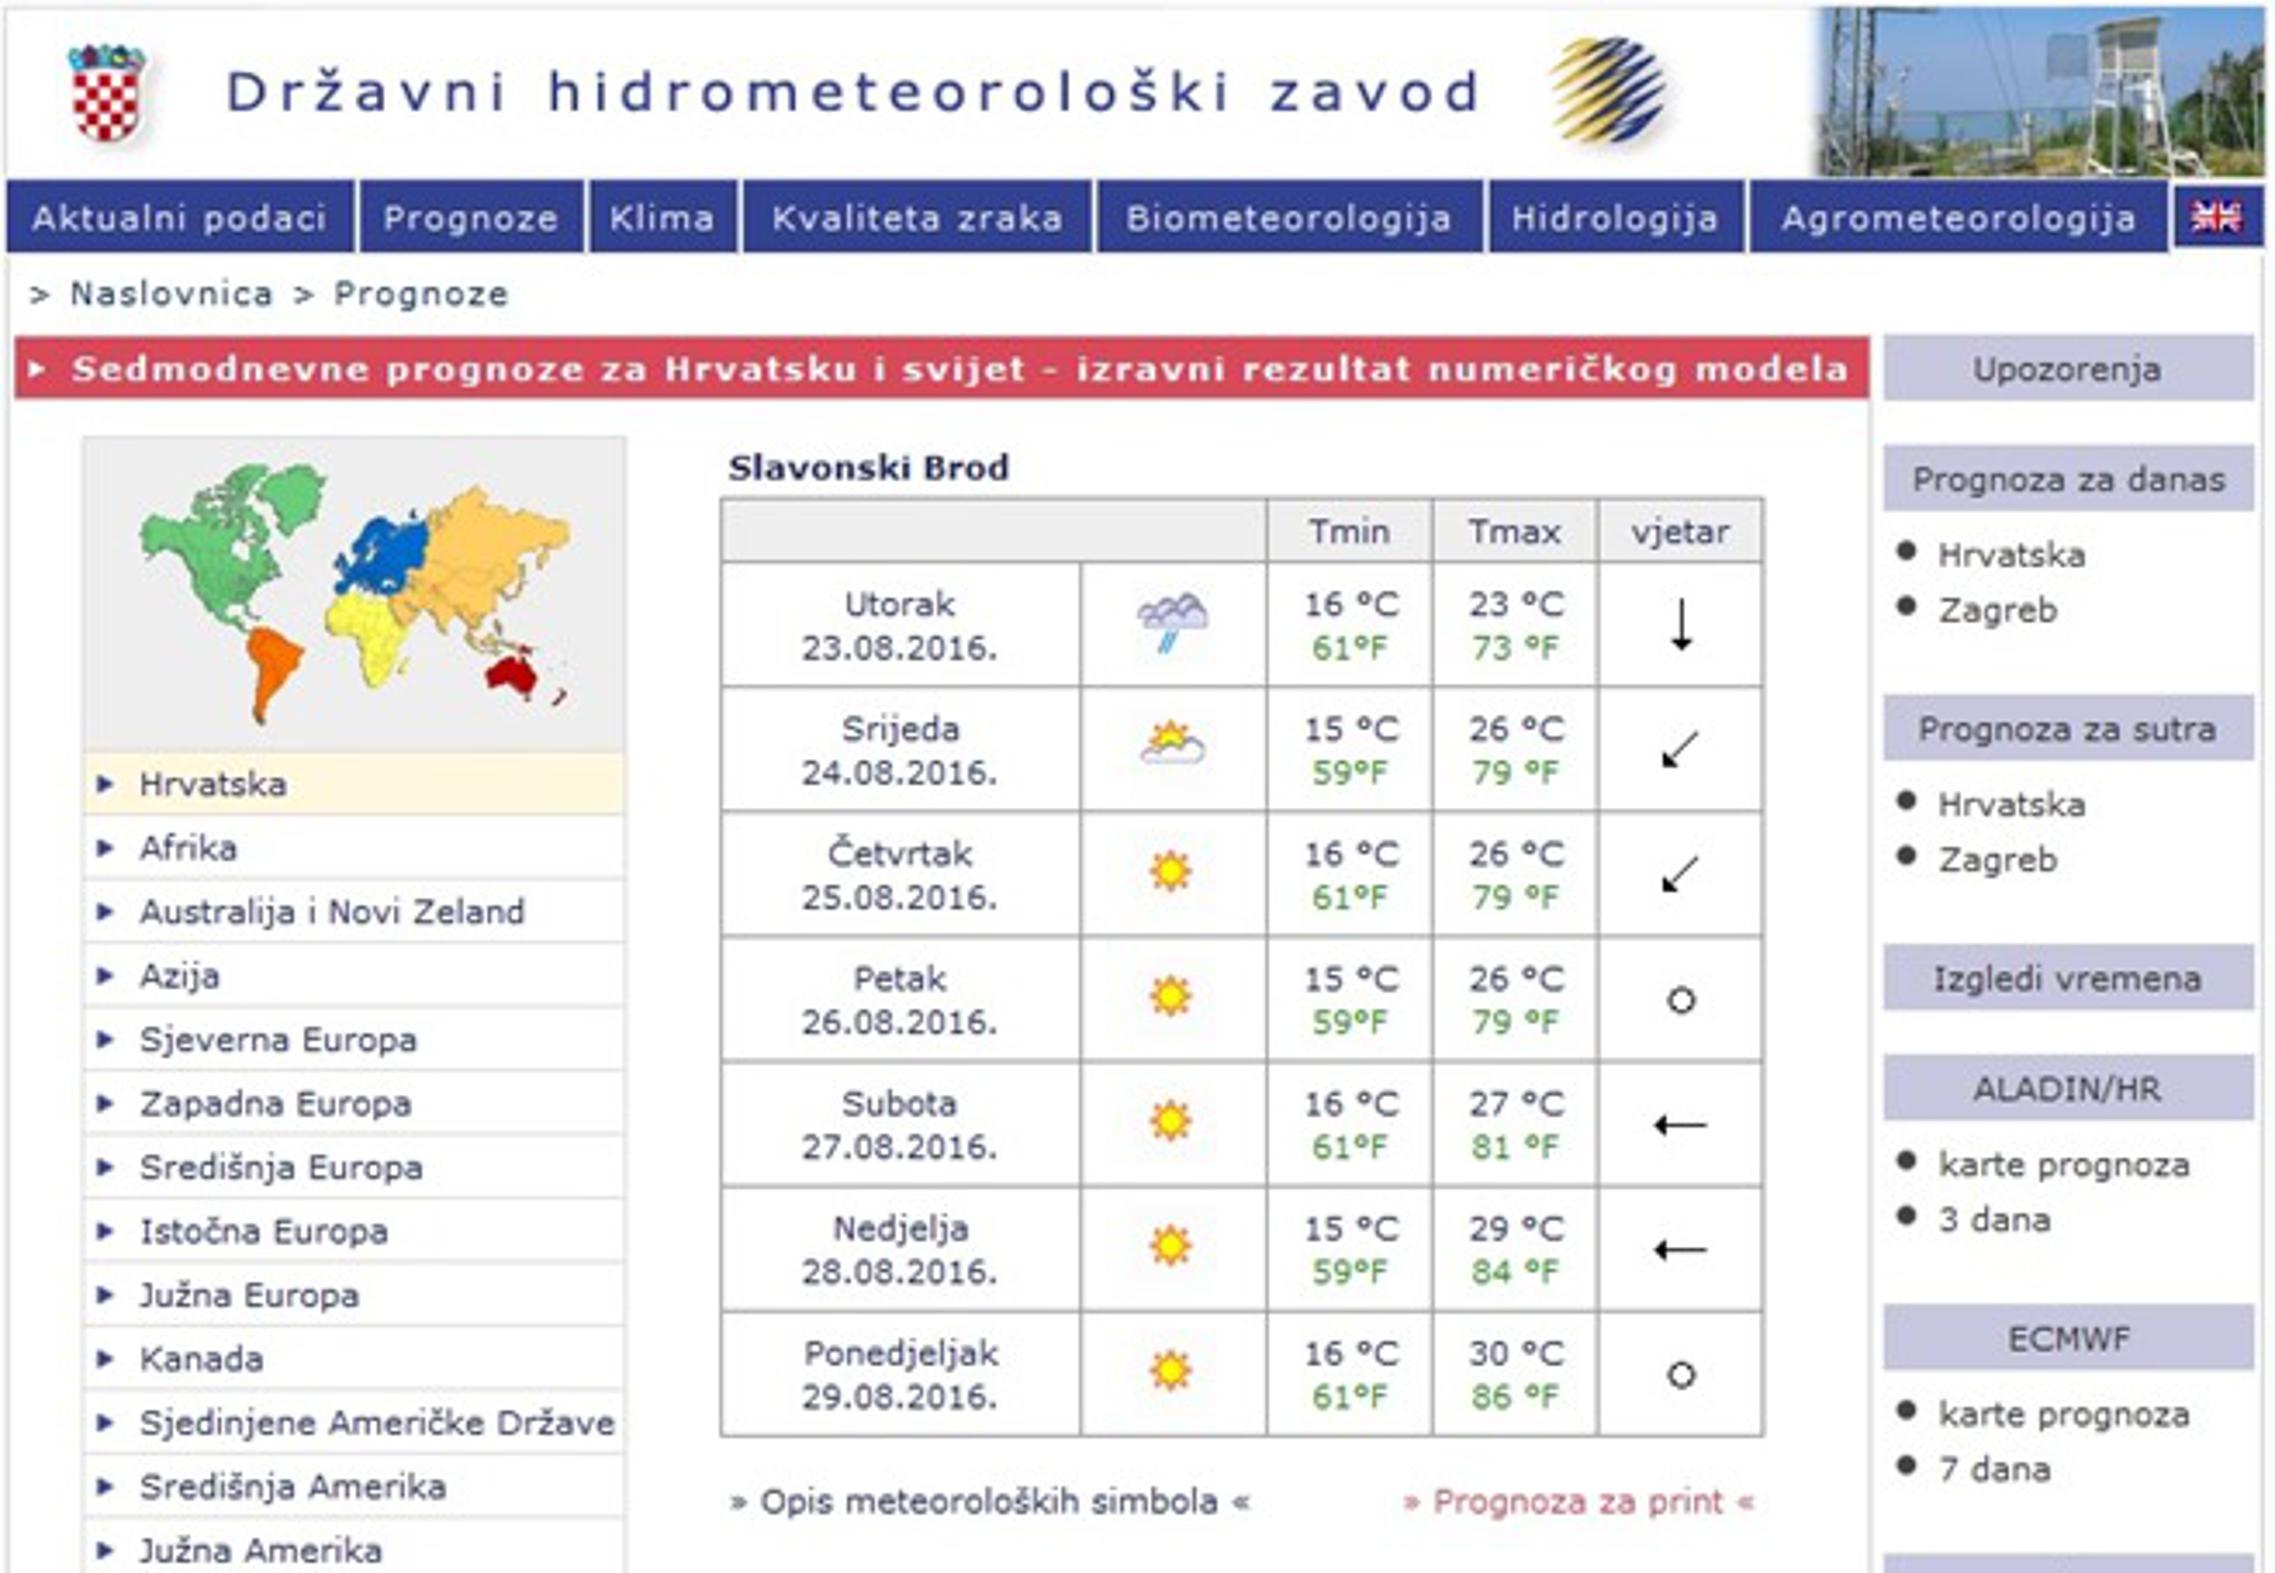 Sedmodnevna prognoza za Slavonski Brod